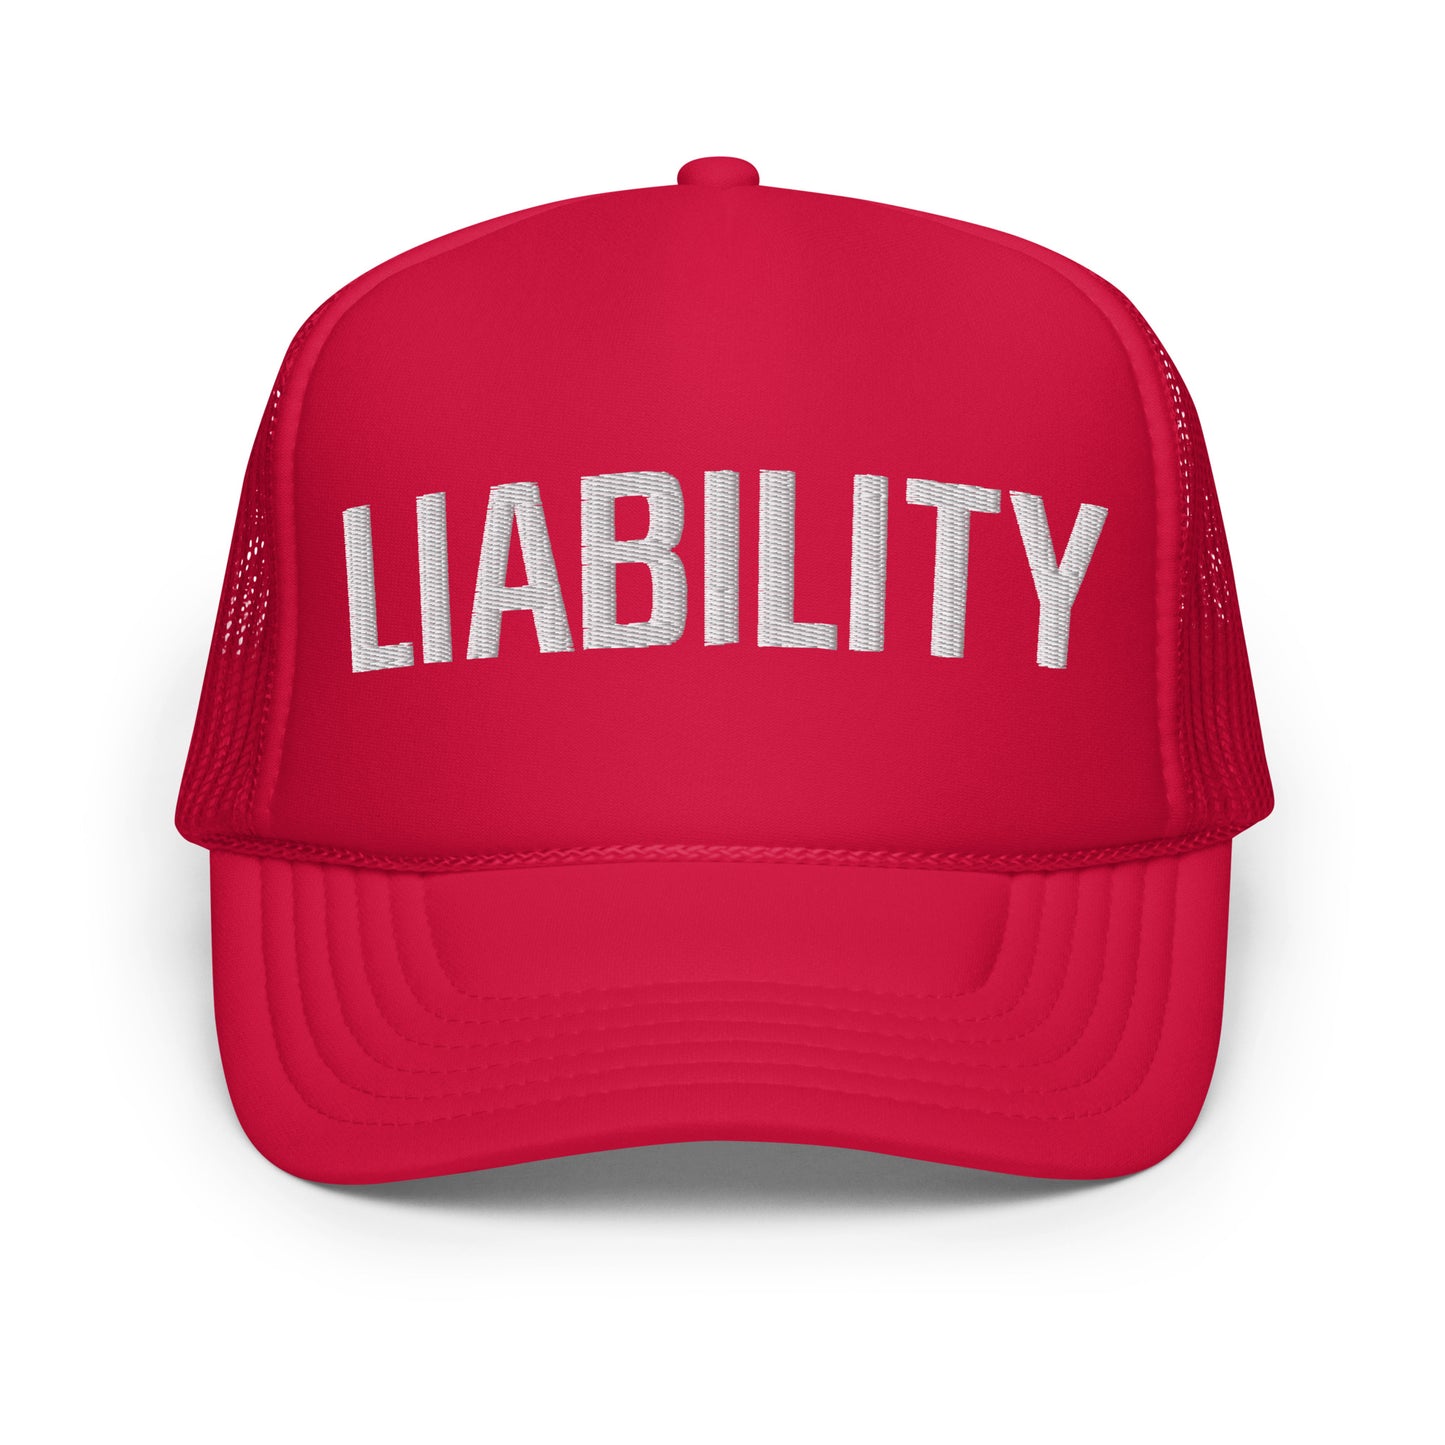 Liability Foam Trucker Hat